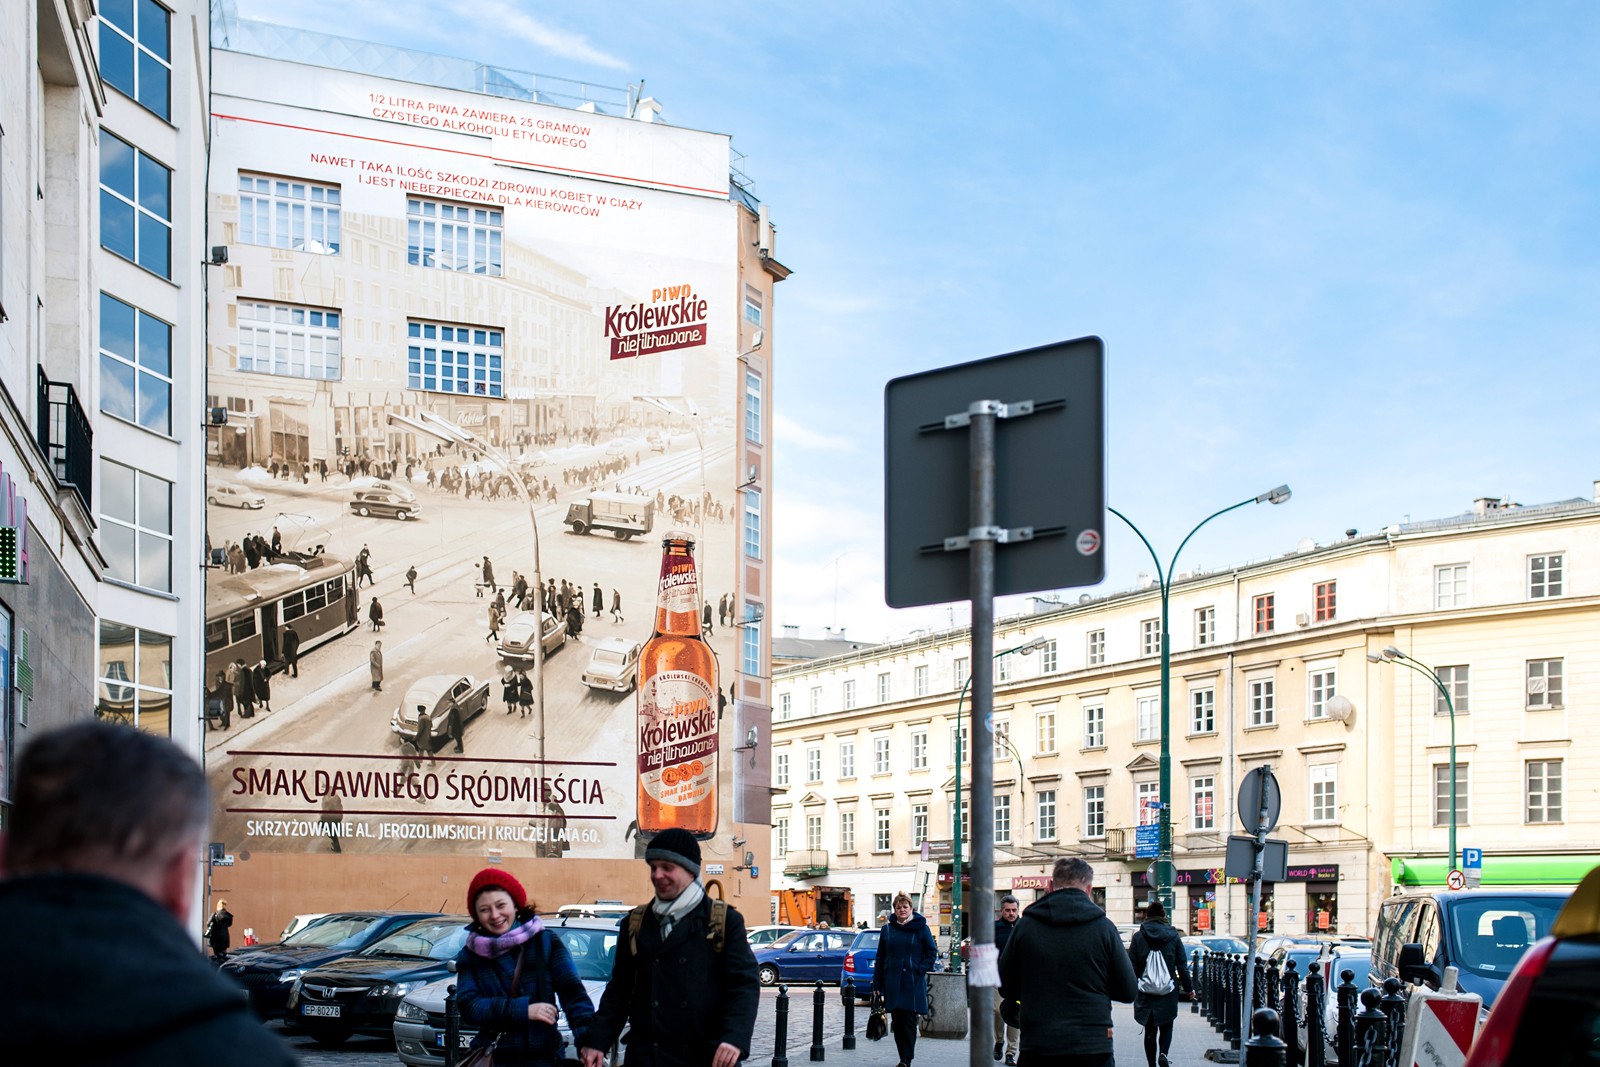 A view of a mural from Krucza street showing Historic Warsaw for Krolewskie Niefiltrowane brand | Ręcznie malowana kampania reklamowa dla marki Królewskie | Portfolio